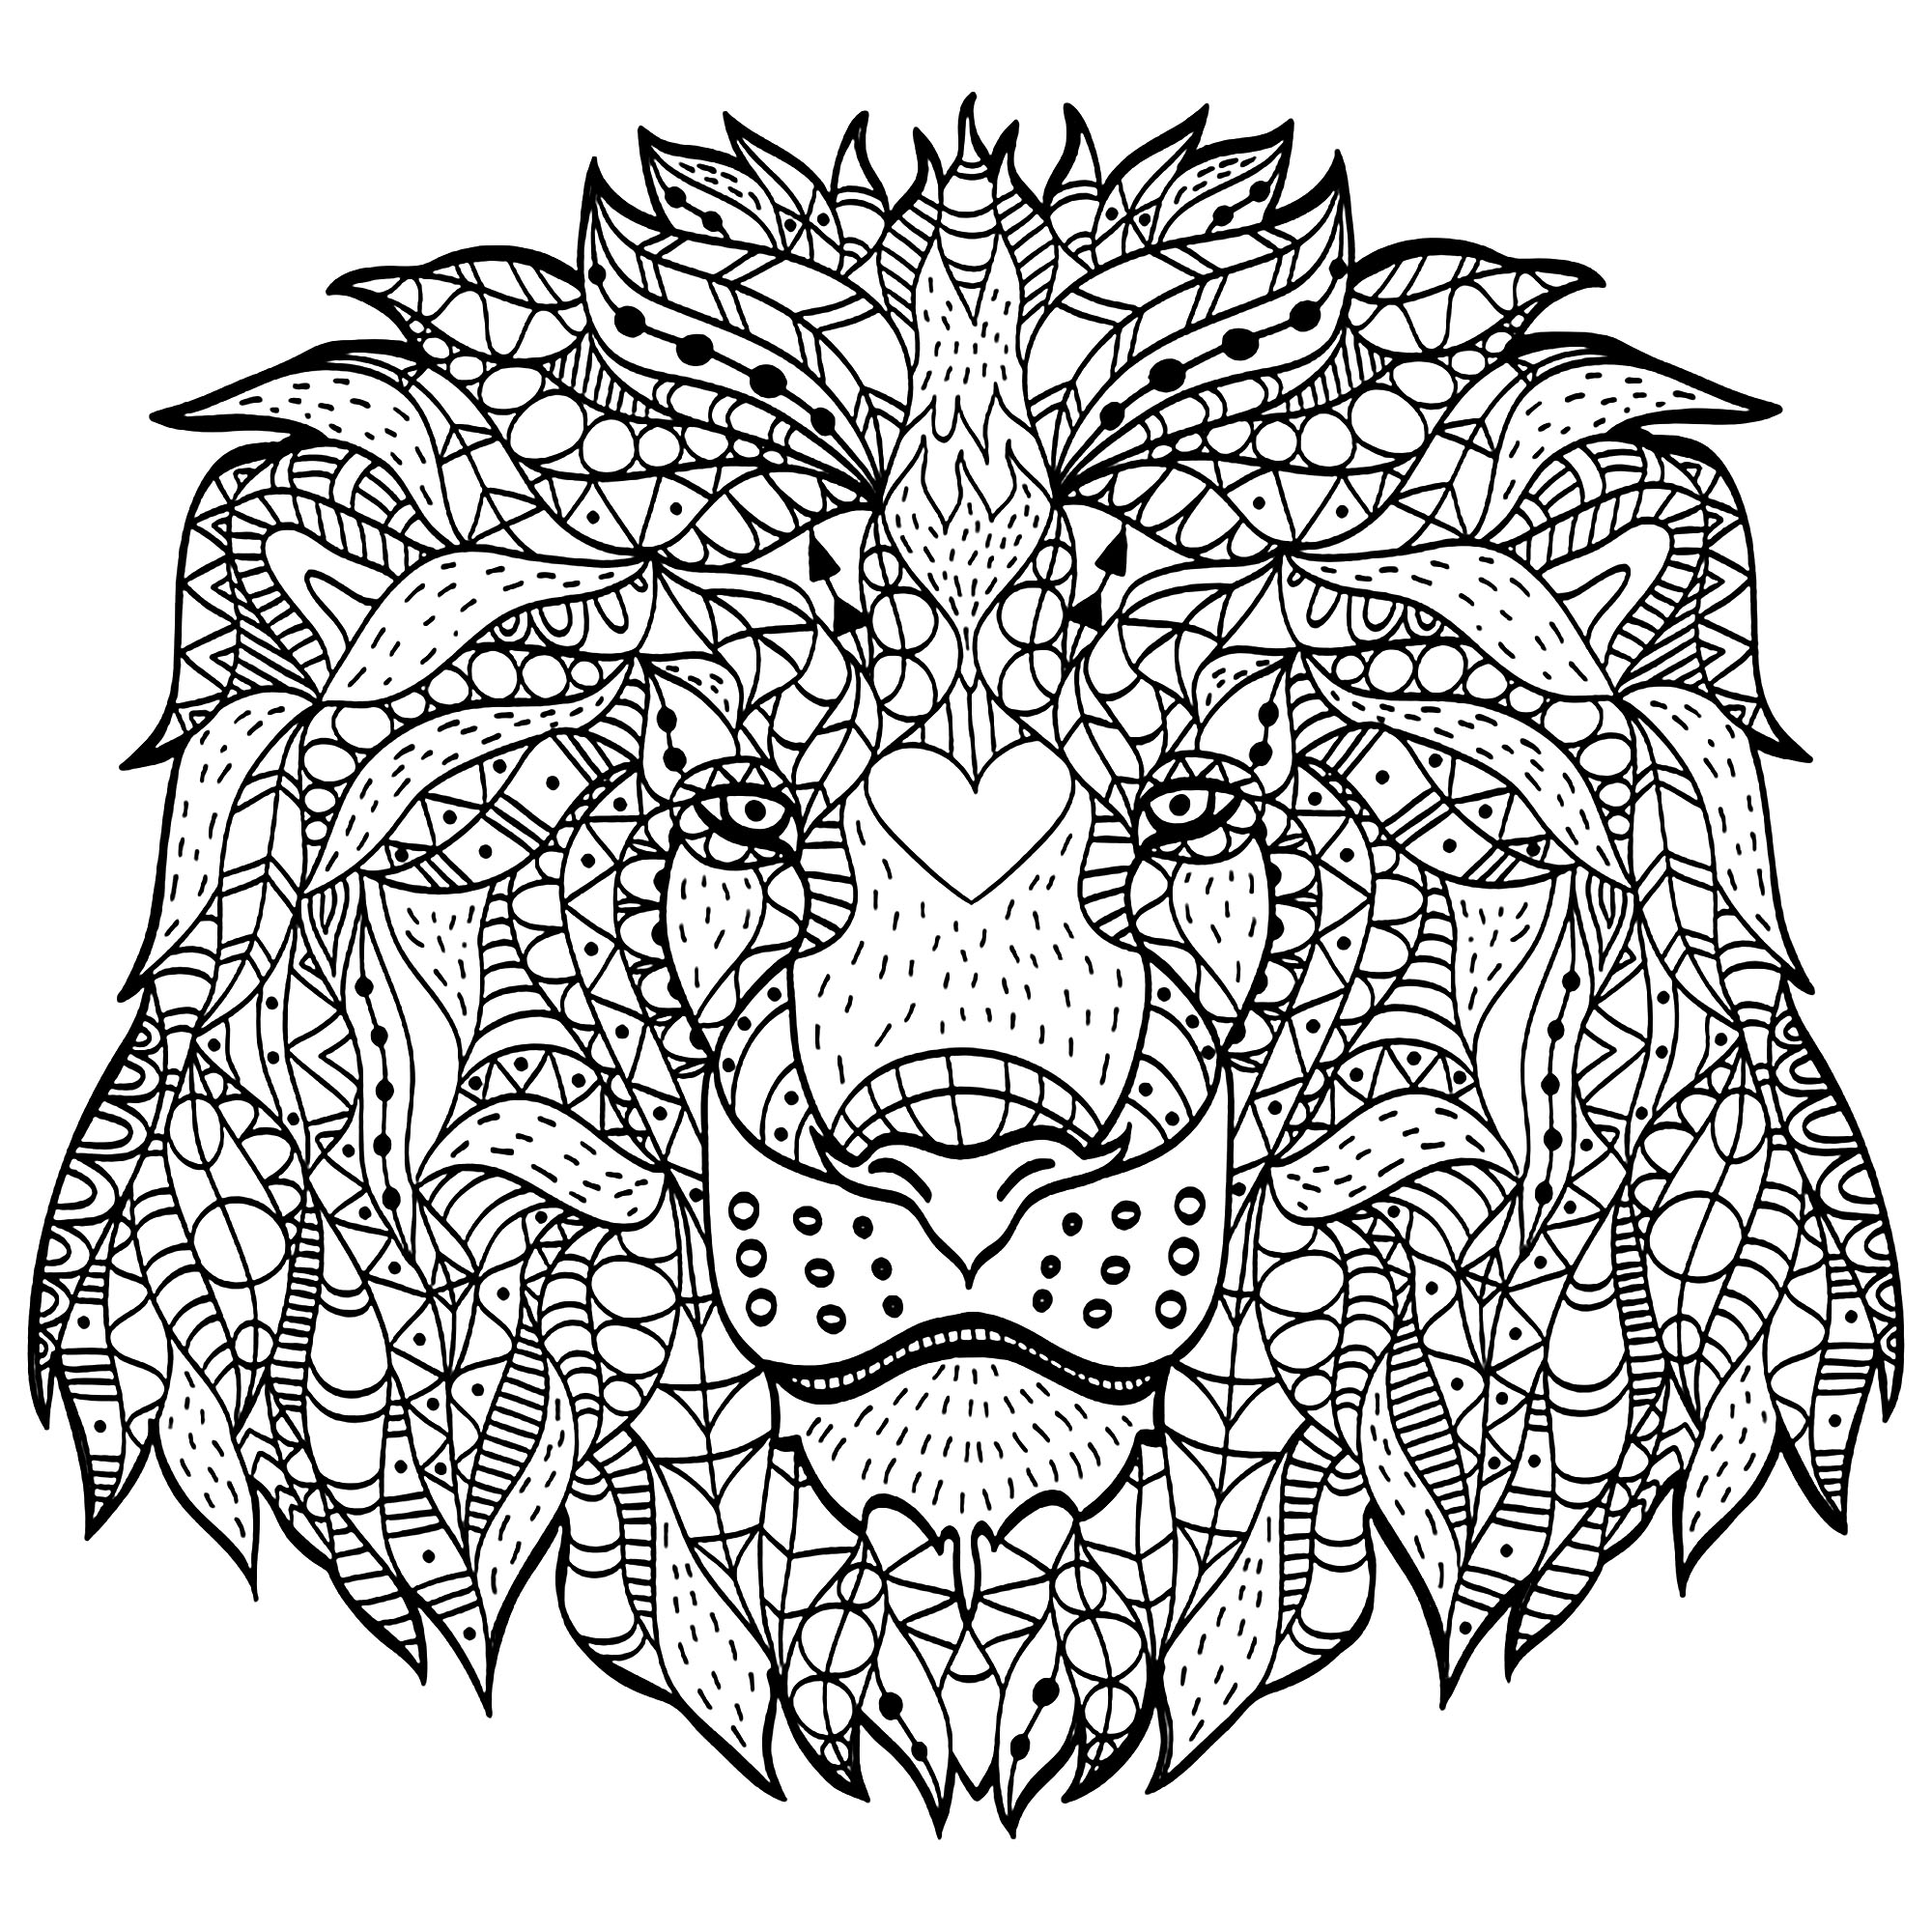 Cette majestueuse tête de lion faite avec des motifs Zentangle va vous demander une concentration totale ! Profitez en !, Artiste : Viktoriia Panchenko   Source : 123rf